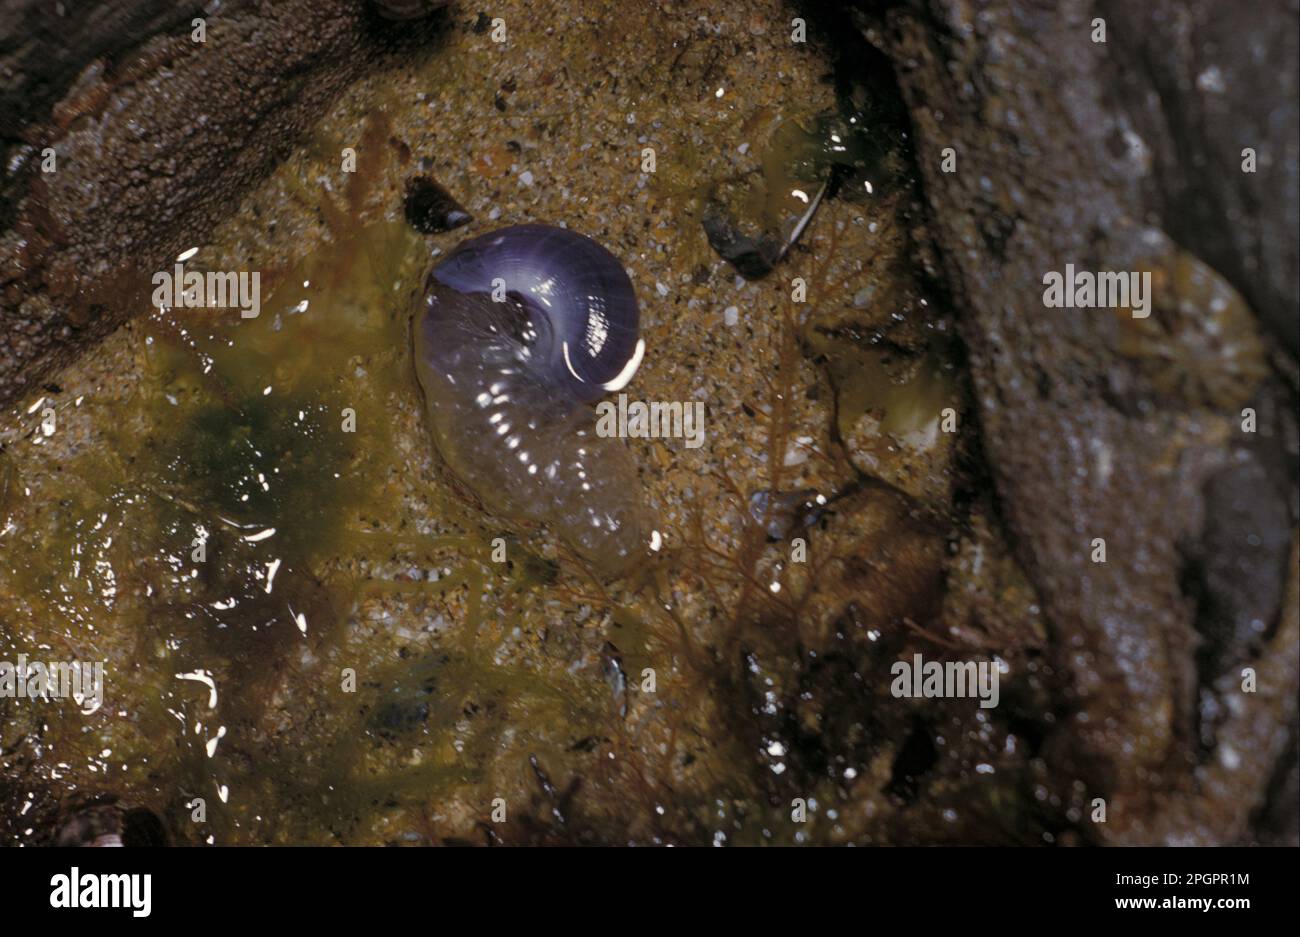 Escargot de mer violet (Janthina janthina), escargot flottant, escargots de violette, escargots flottants, autres animaux, Escargots marins, escargots, animaux, mollusques Banque D'Images